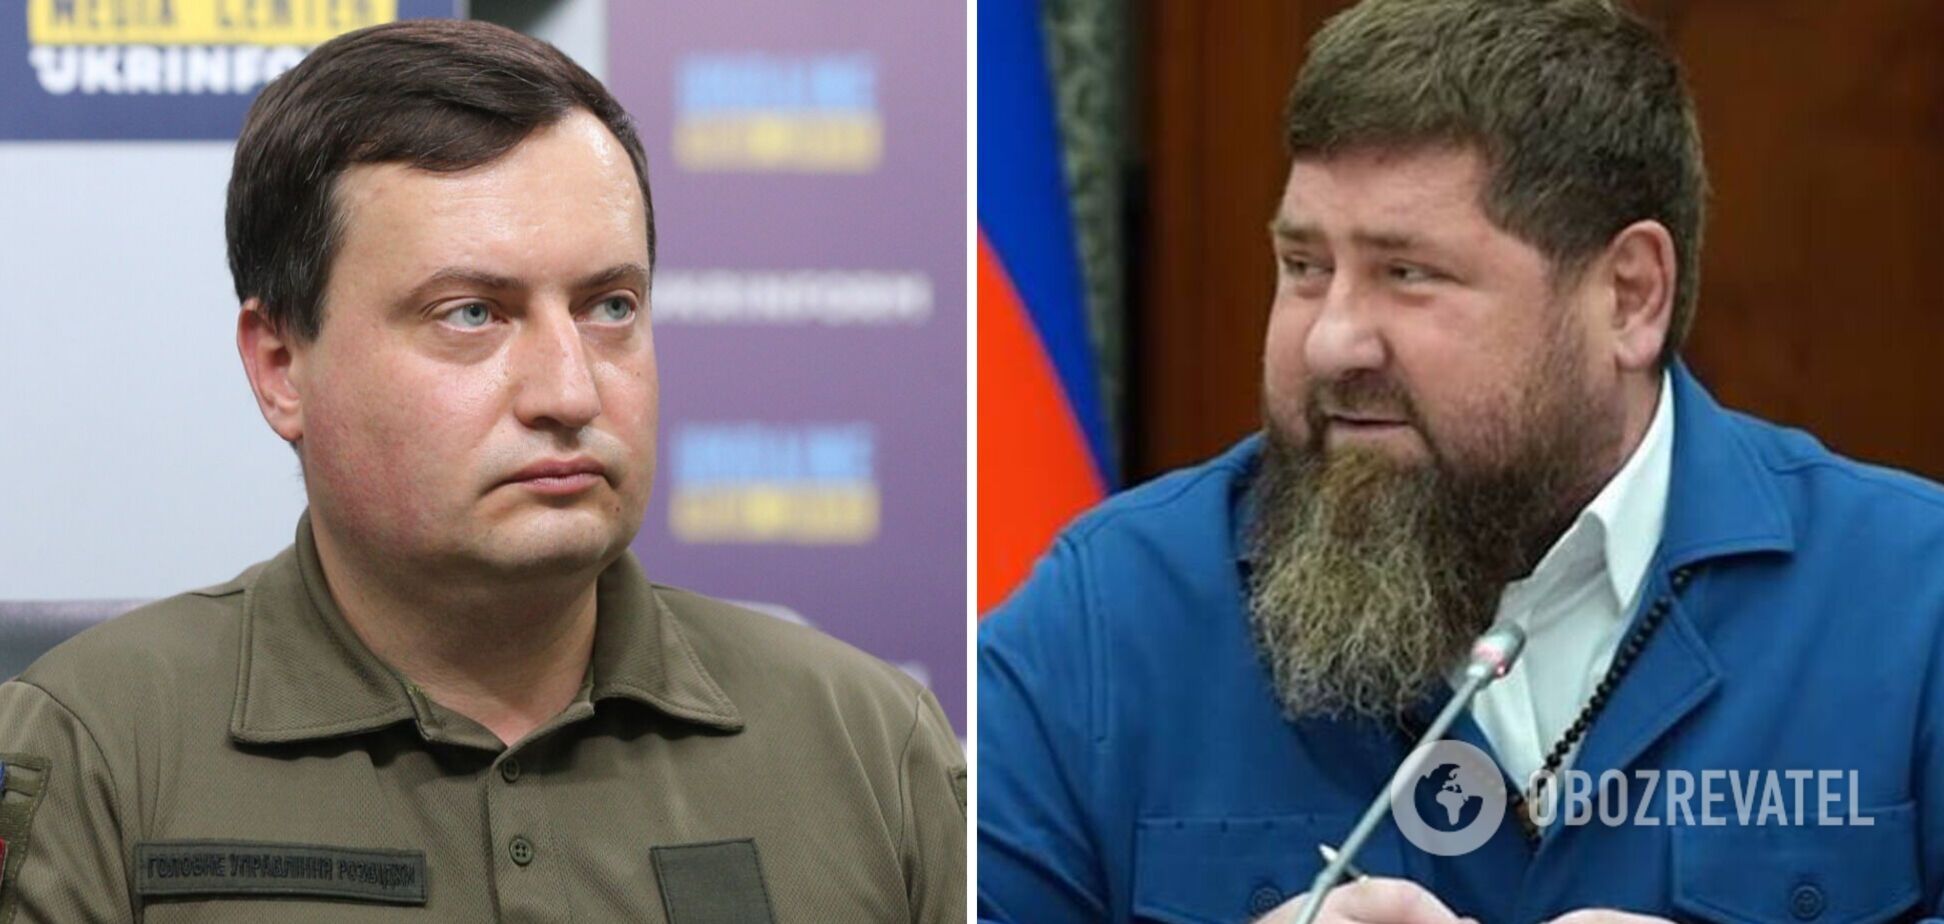 Кадыров в коме: в ГУР подтвердили информацию о критическом состоянии главы Чечни